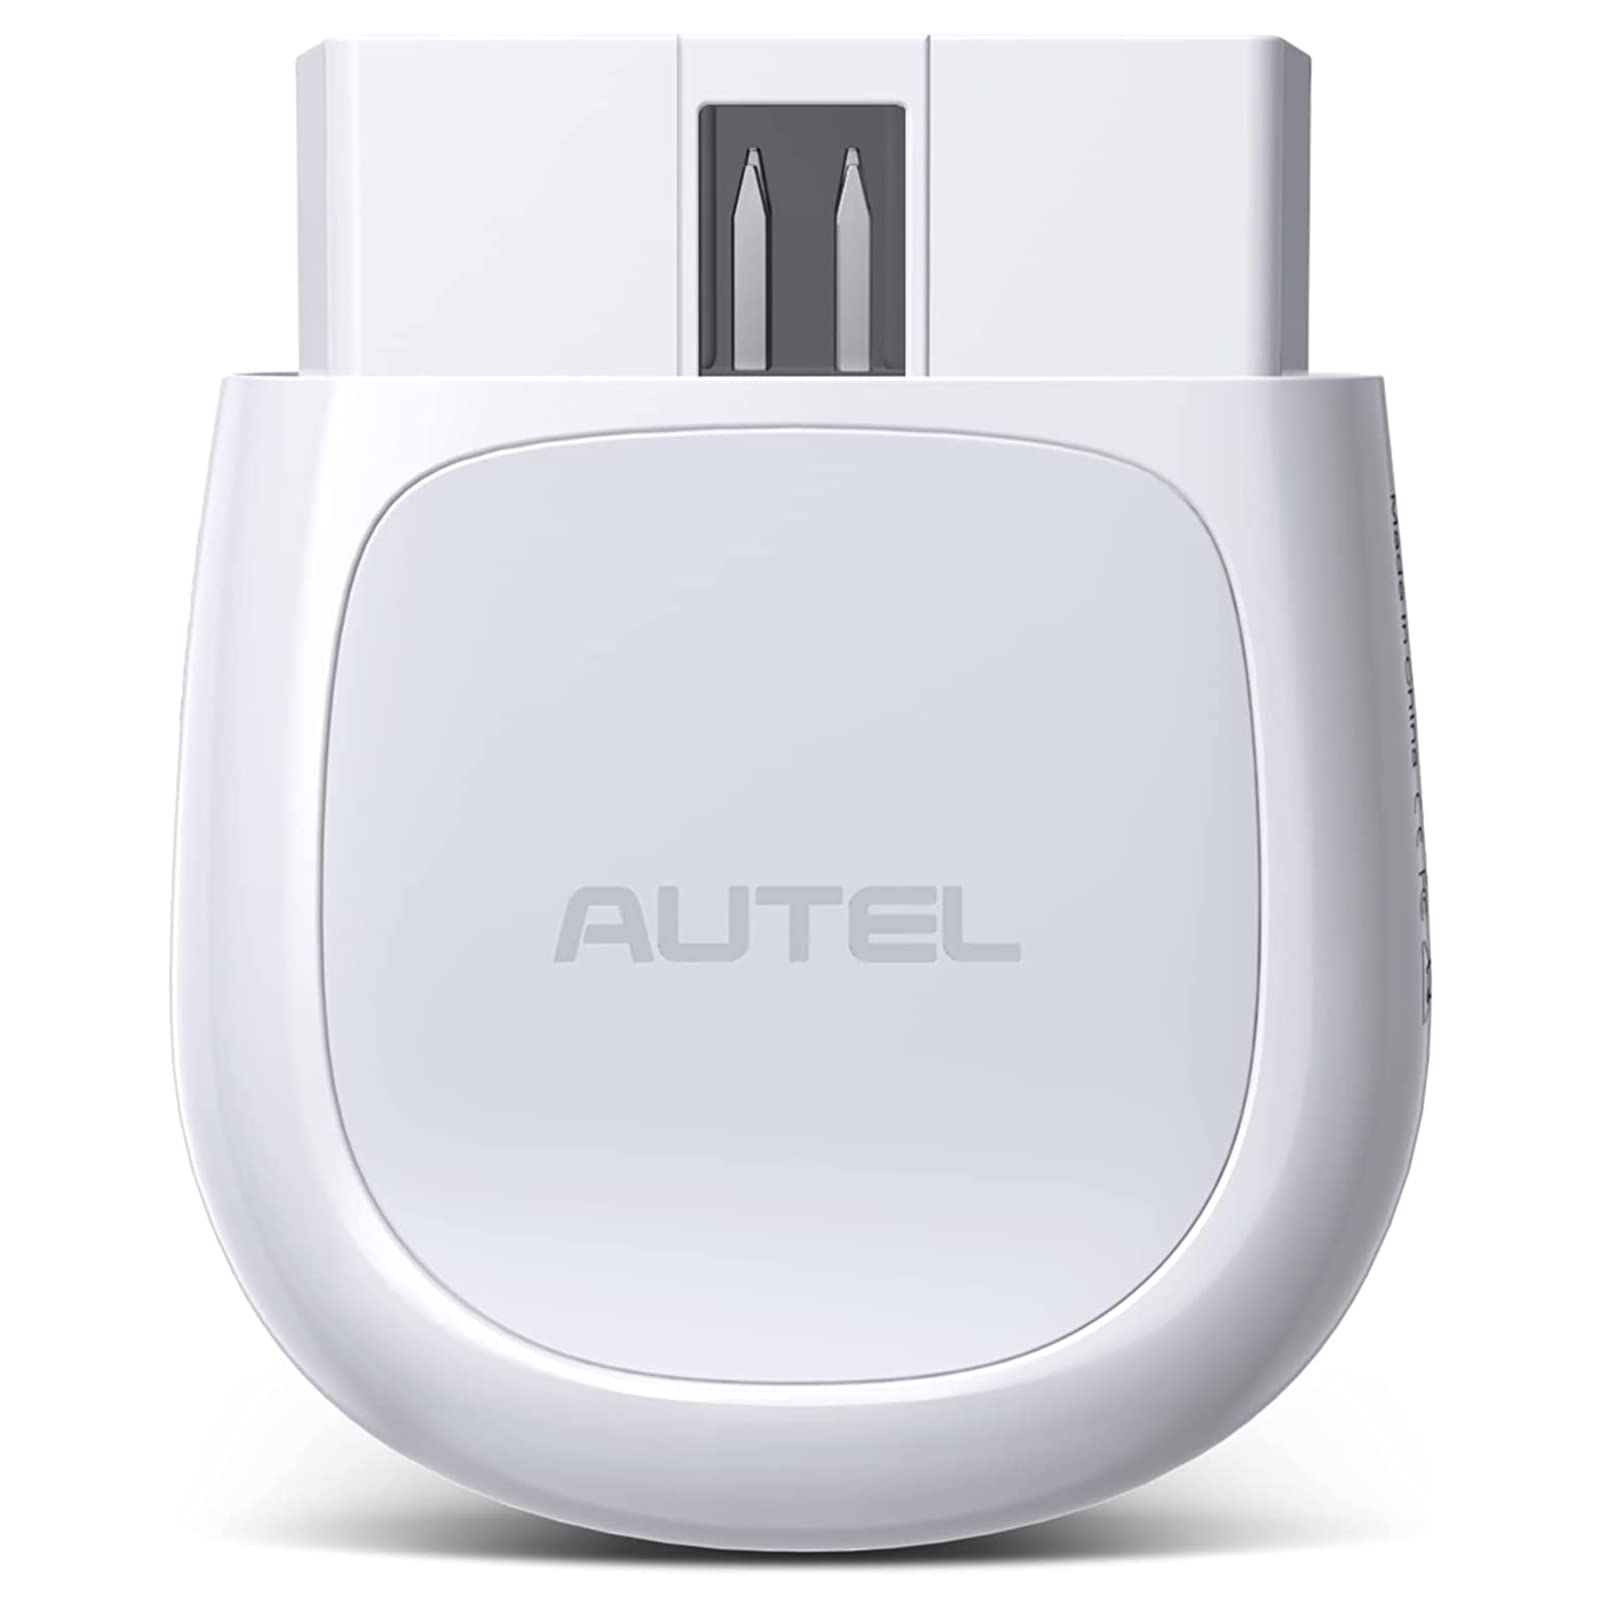 商品情報商品の説明Why should you buy this scanner? The Autel AP200 Bluetooth Car Diagnostic Interface Scanner has the following advantages: Brand Effect: In the automotive aftermarket world, the Autel brand is a househ ...主な仕様